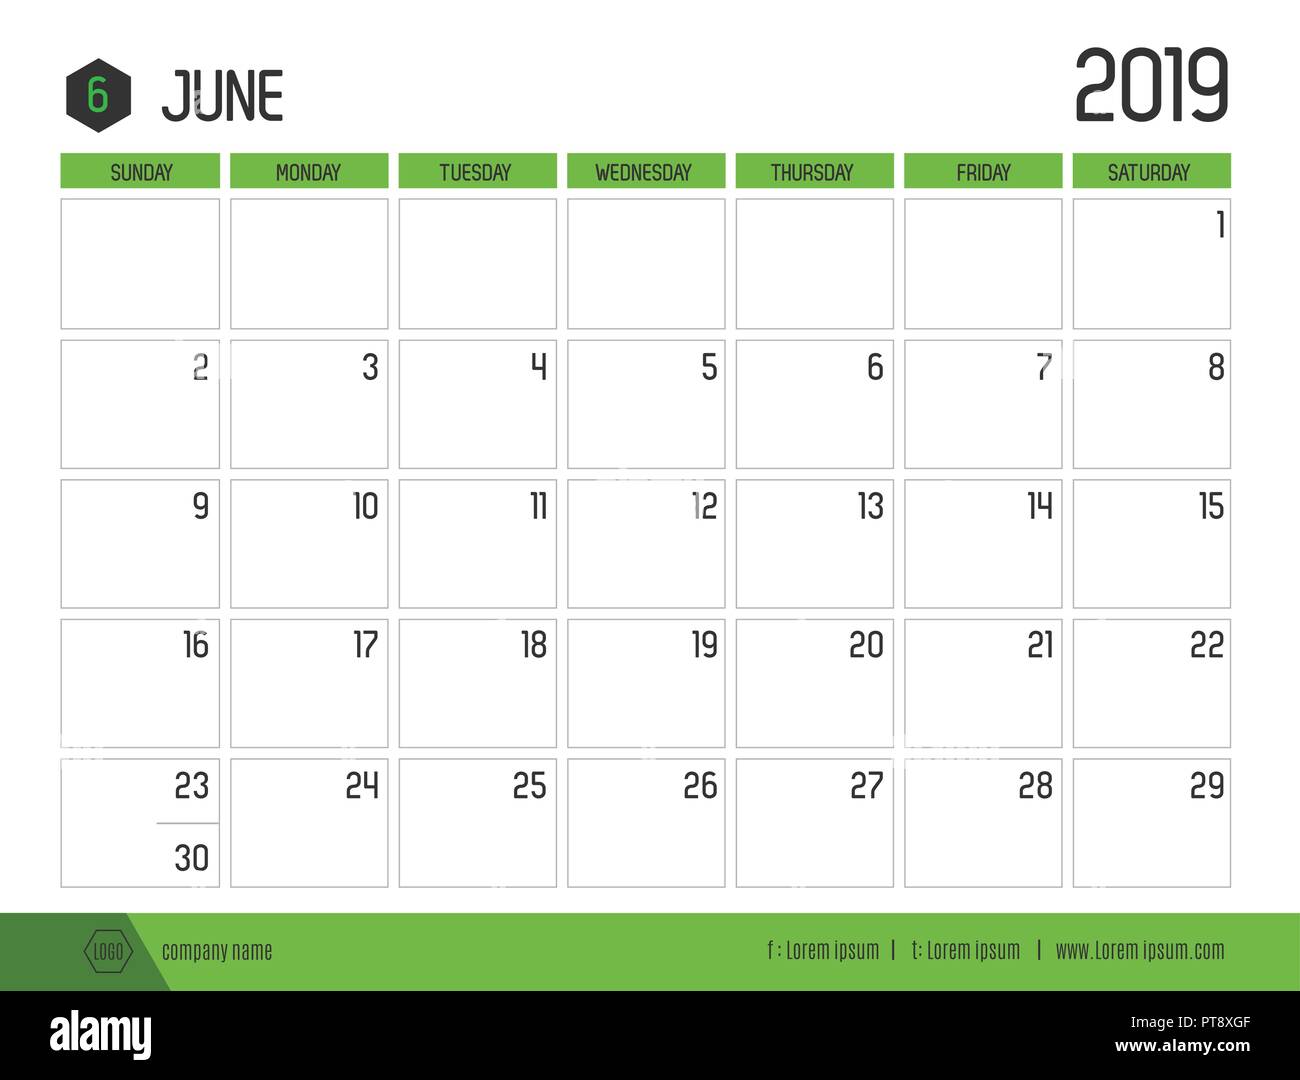 Vecteur de calendrier 2019 vert moderne ( juin ) en simple table propre style.full size 21 x 16 cm ; début de la semaine le dimanche Illustration de Vecteur